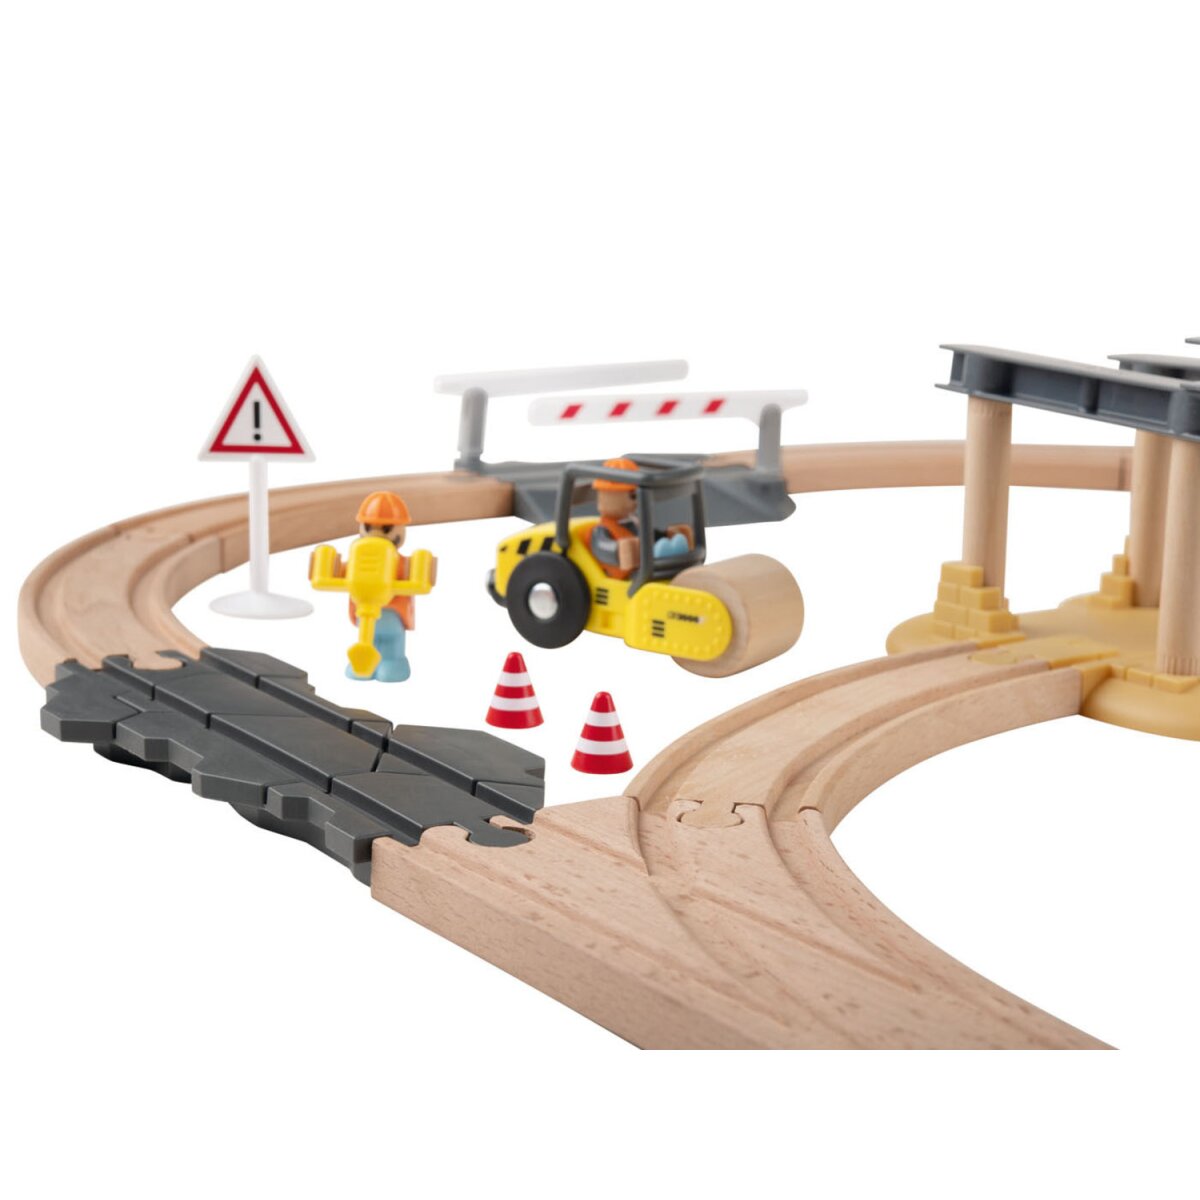 Playtive Holz-Eisenbahn-Set Baustelle, mit Buchenholz - 24,99 € gut, B-Ware